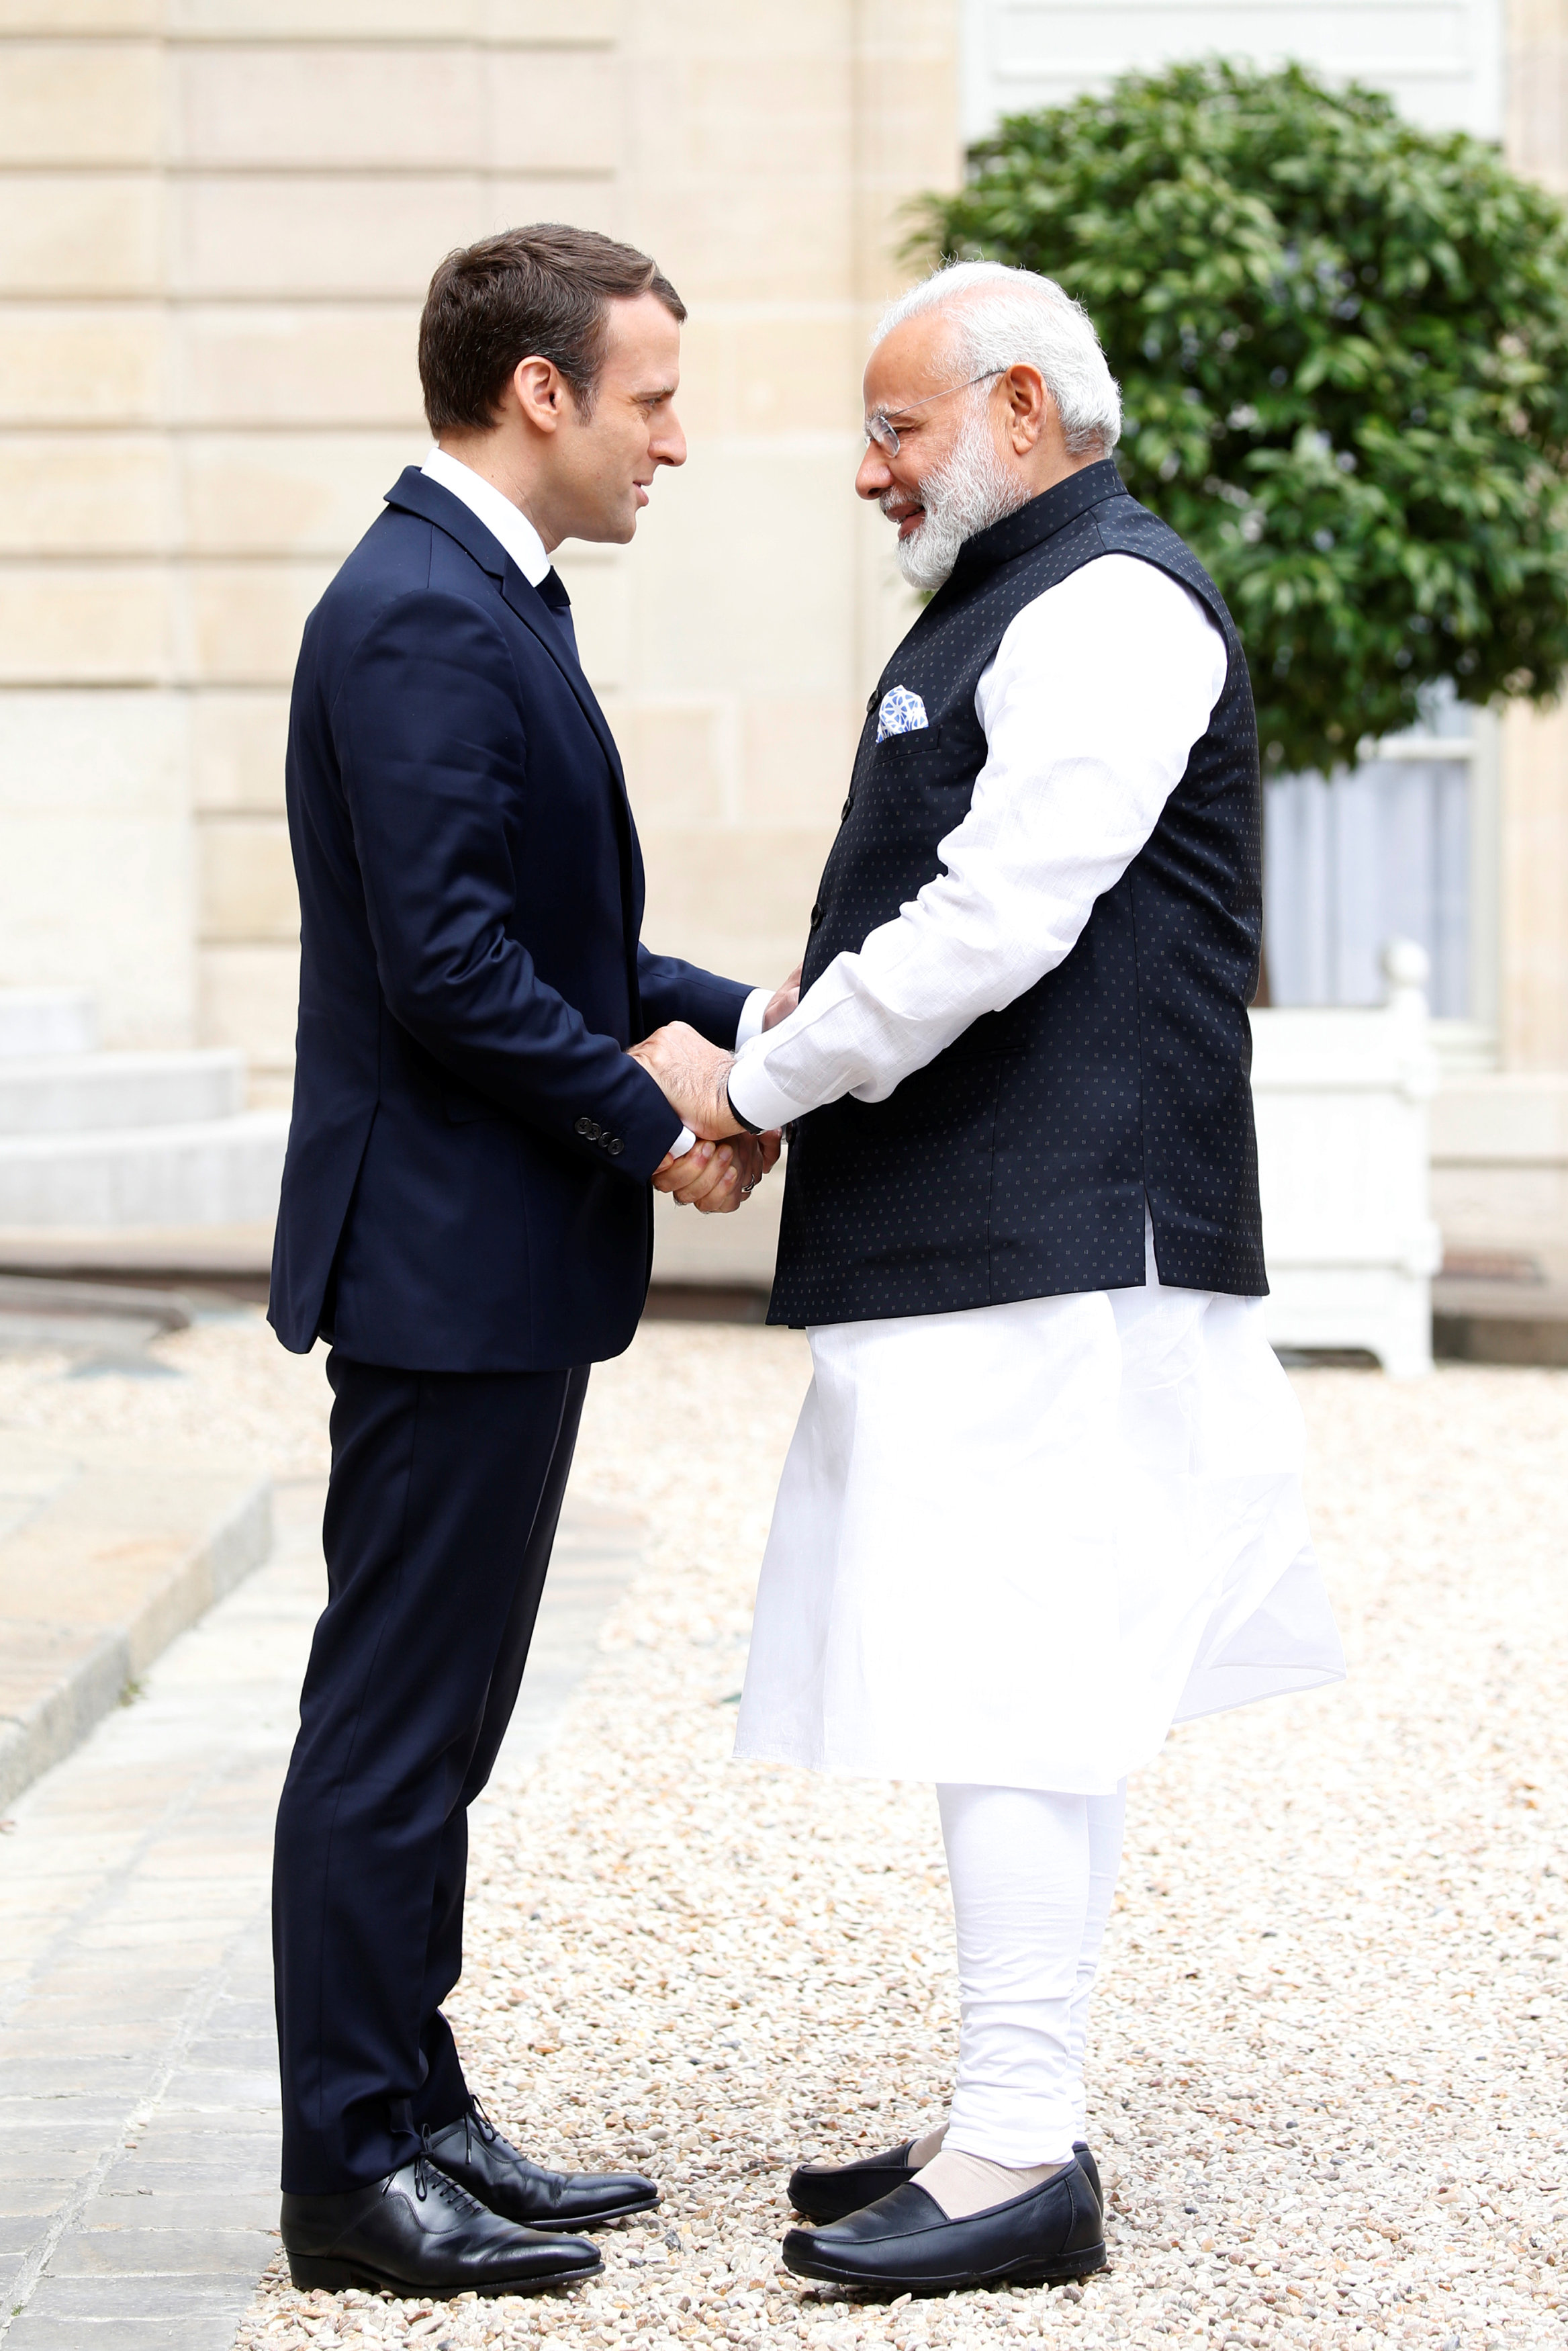 رئيس وزراء الهند لحظة وصوله الاليزيه